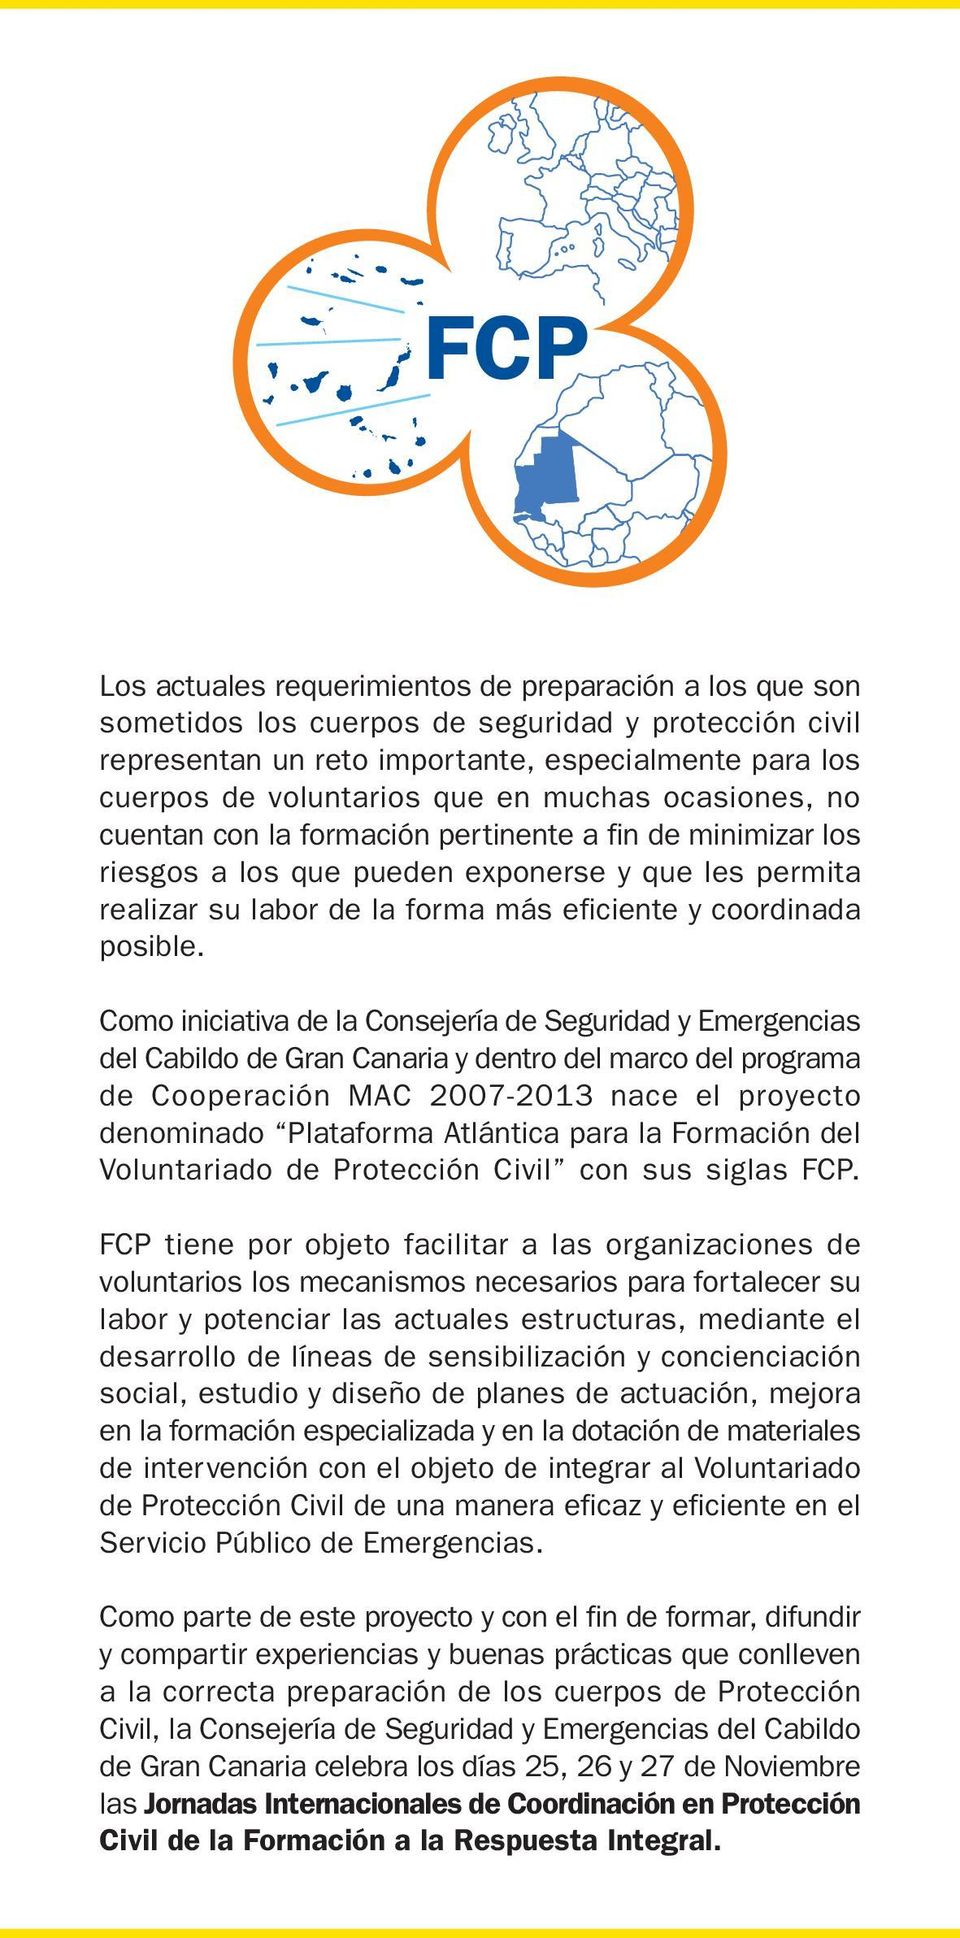 Como iniciativa de la Consejería de Seguridad y Emergencias del Cabildo de Gran Canaria y dentro del marco del programa de Cooperación MAC 2007-2013 nace el proyecto denominado Plataforma Atlántica